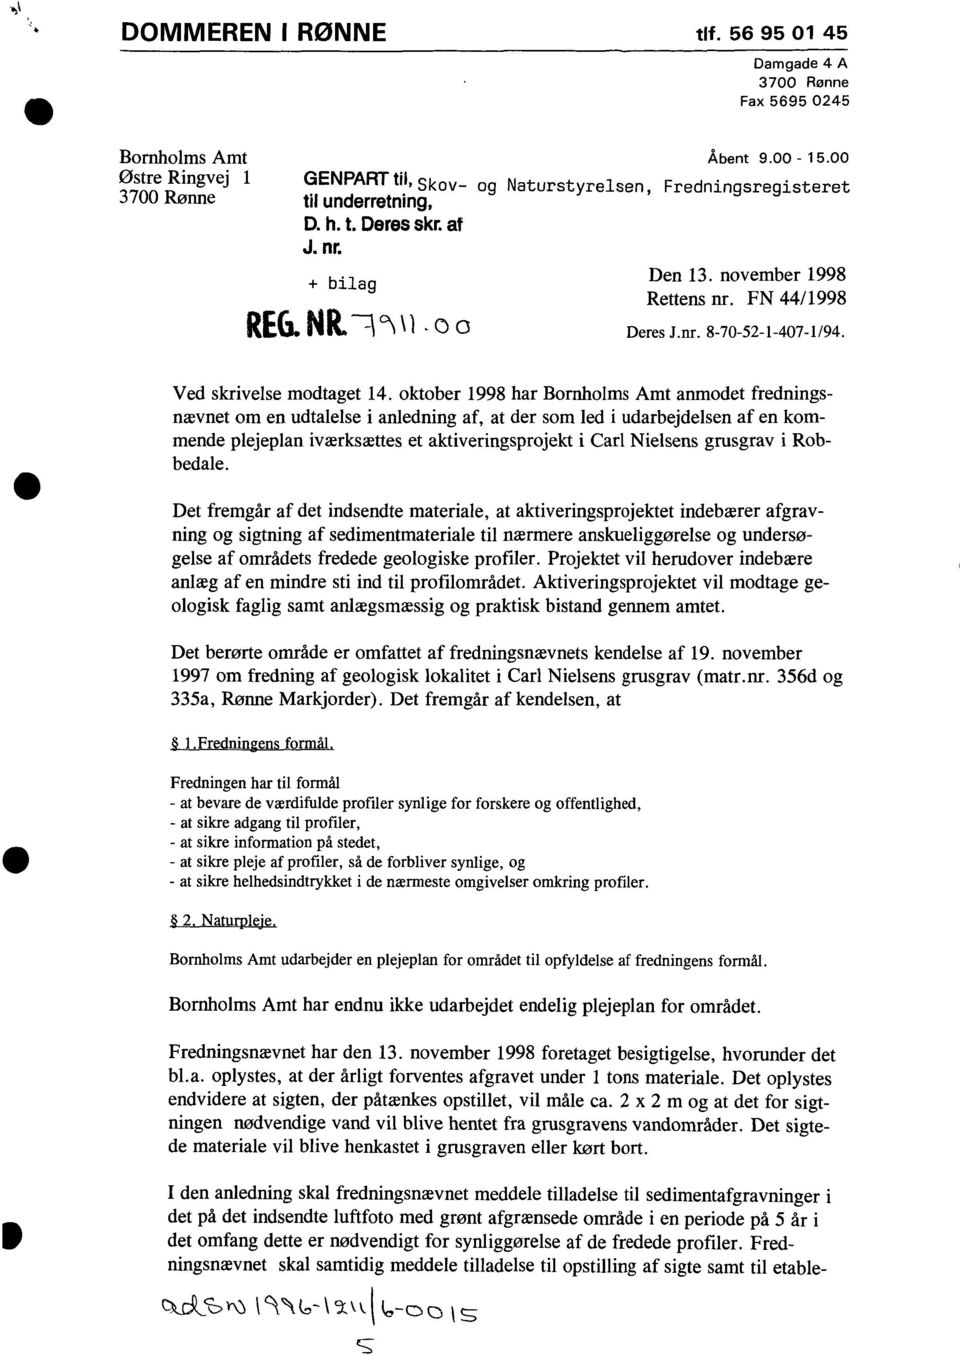 oktober 1998 har Bornholms Amt anmodet fredningsnævnet om en udtalelse i anledning af, at der som led i udarbejdelsen af en kommende plejeplan iværksættes et aktiveringsprojekt i Carl Nielsens